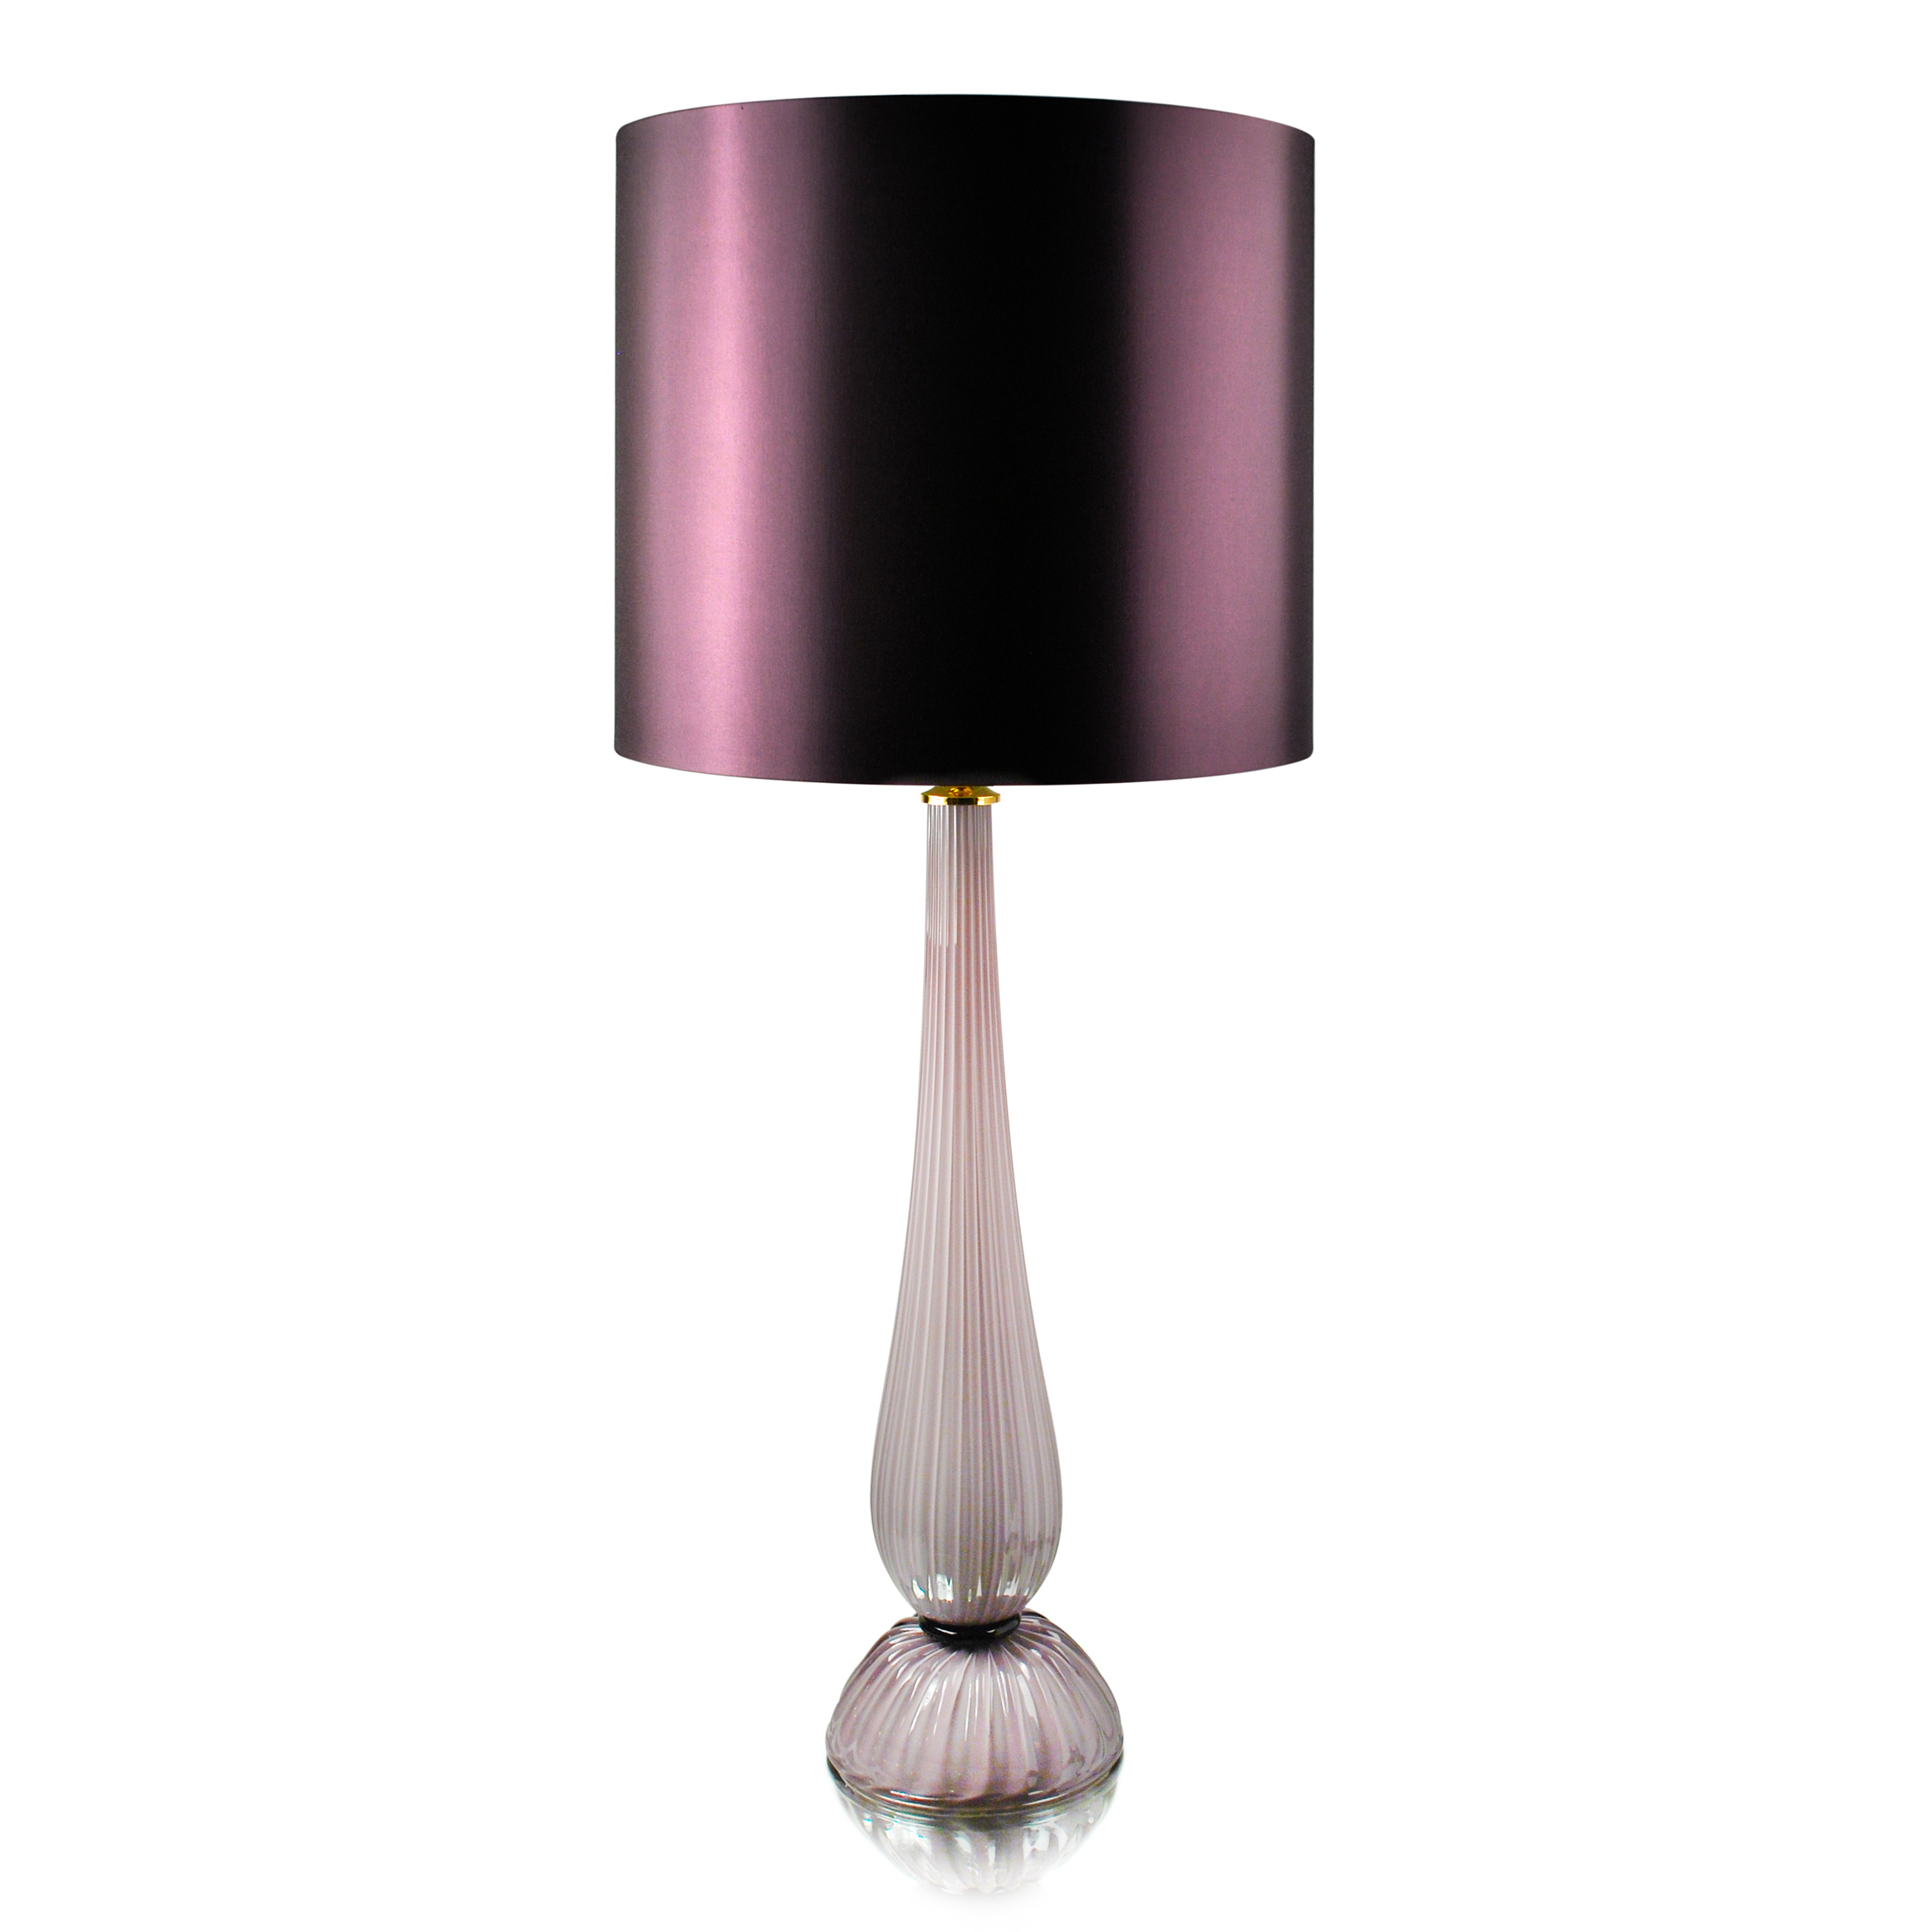 Купить Настольная лампа Stelo в интернет-магазине roooms.ru